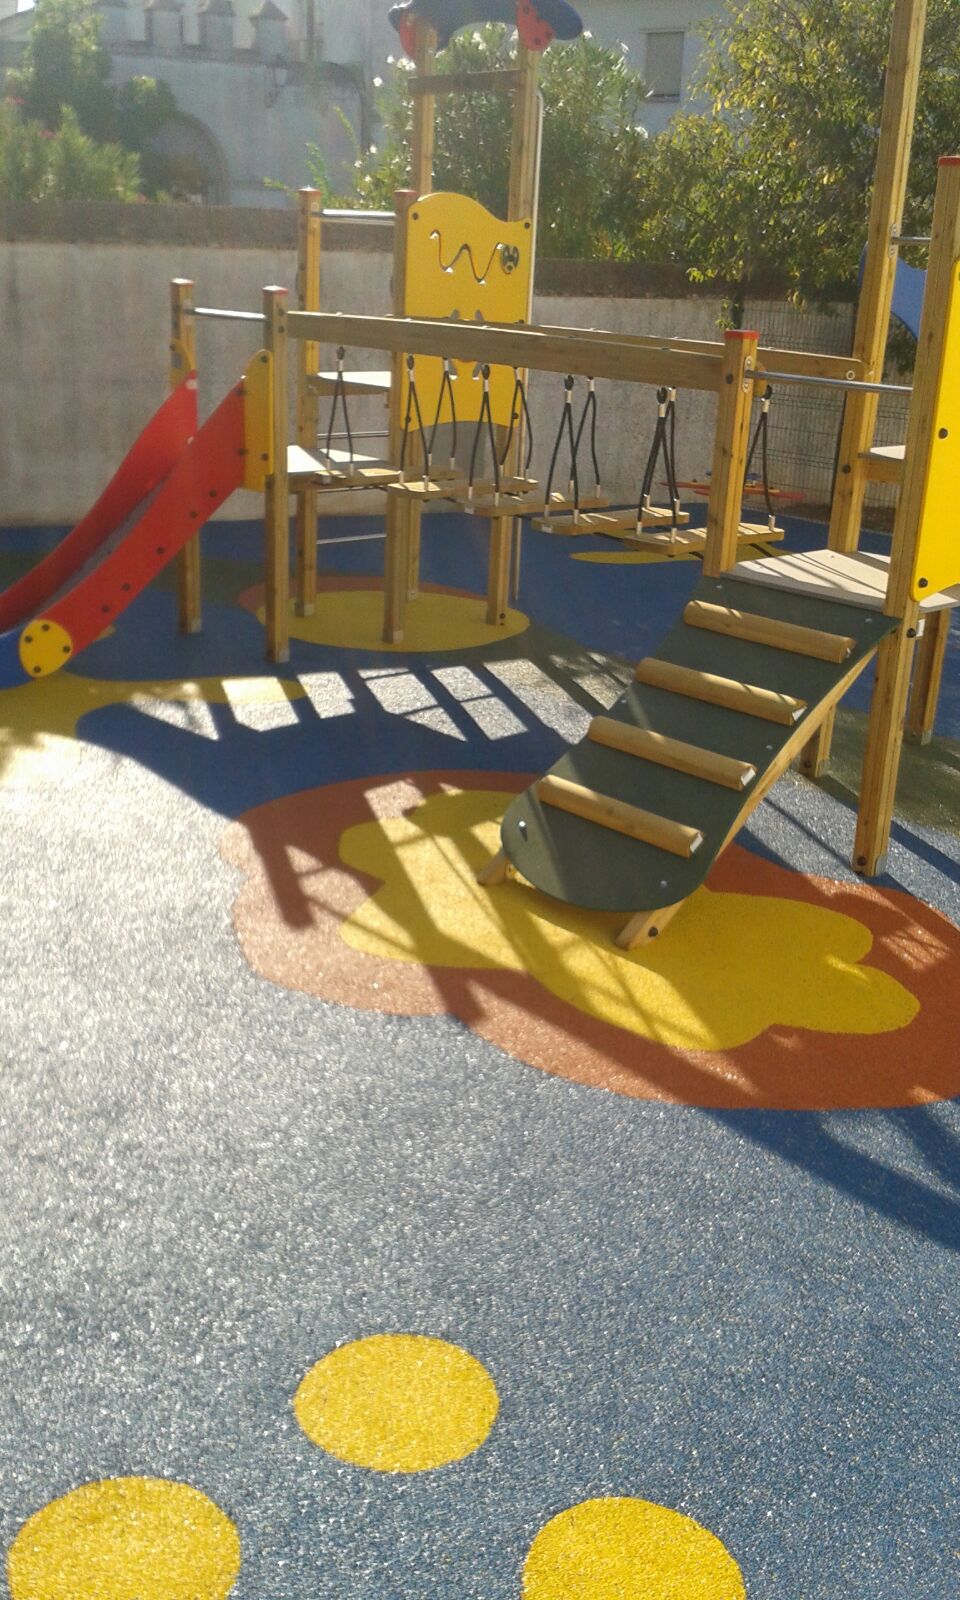 La seguridad en parques: suelo de parque infantil - Megatod